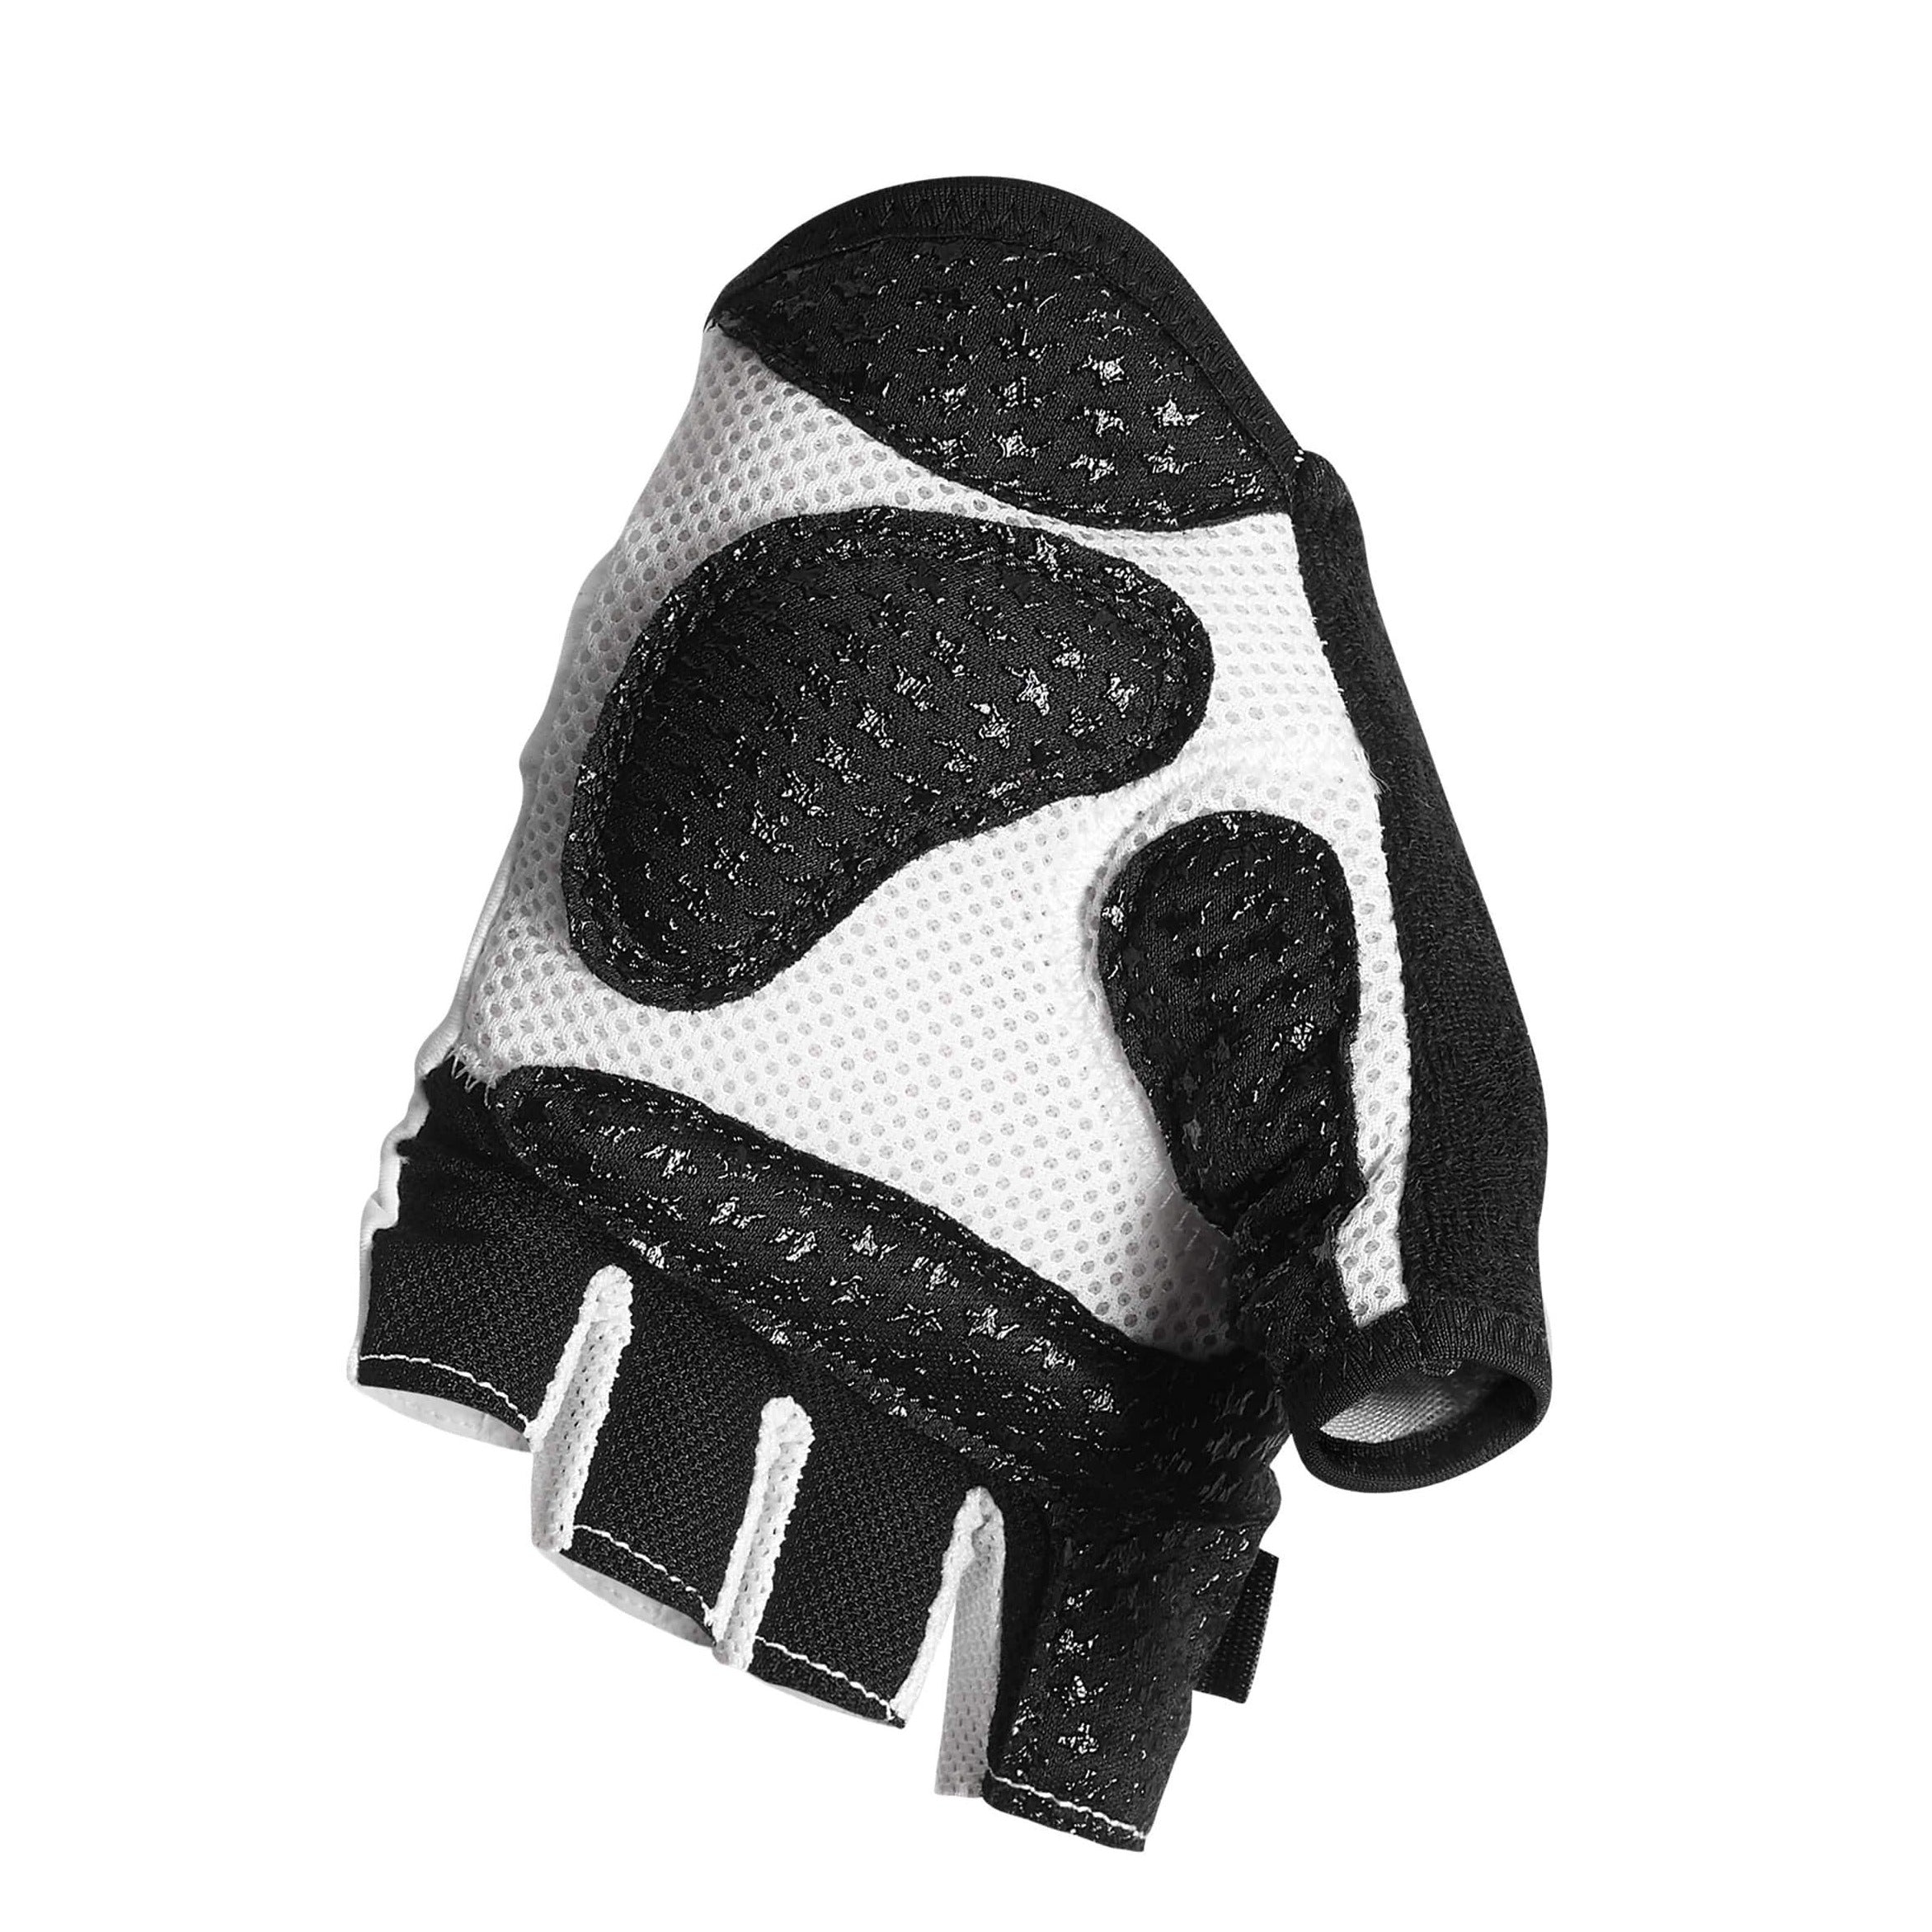 ASSOS Summer Gloves S7